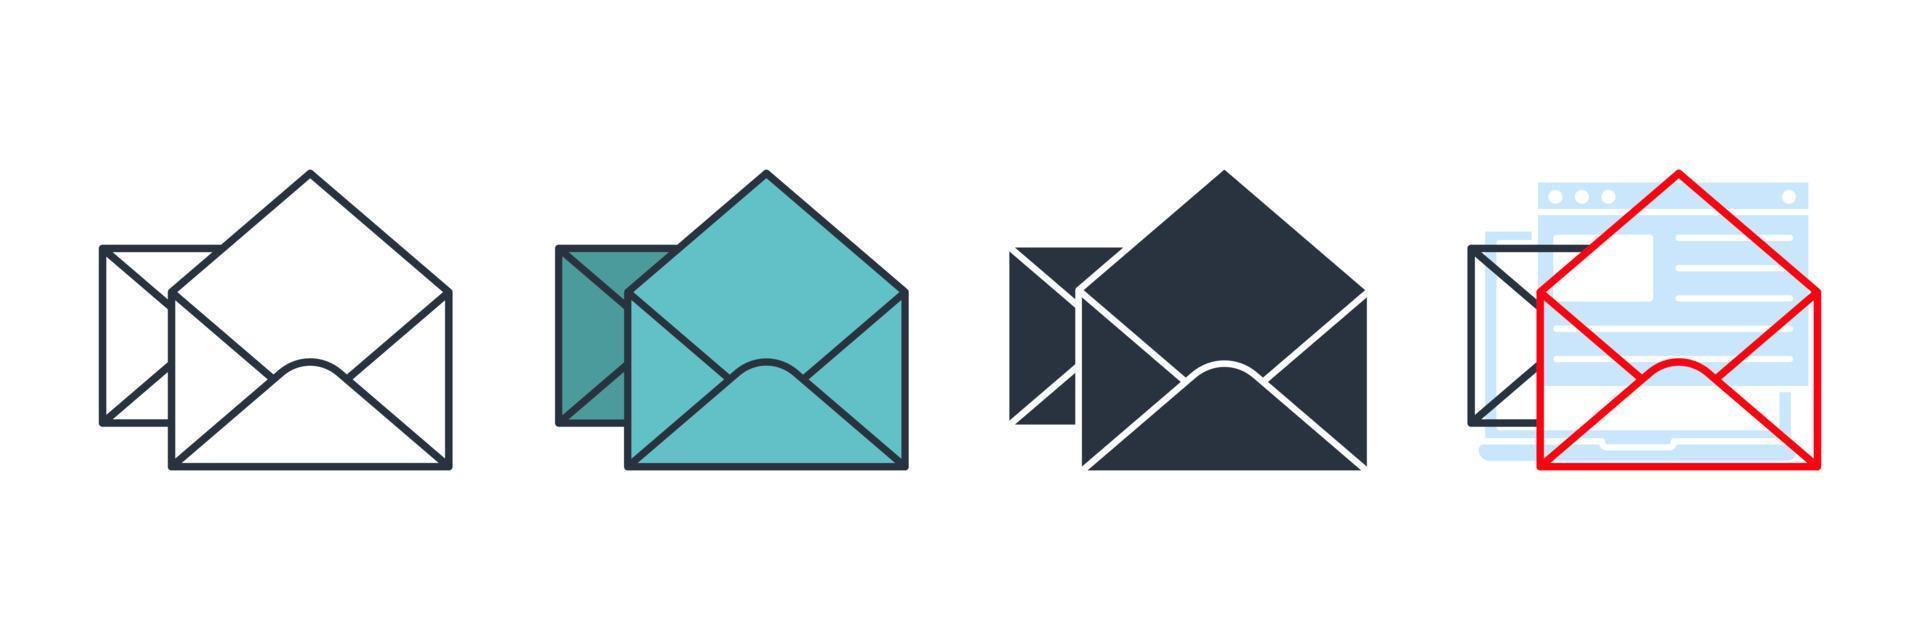 ilustração em vetor e-mail ícone logotipo. modelo de símbolo de serviços de correio de envelope para coleção de design gráfico e web